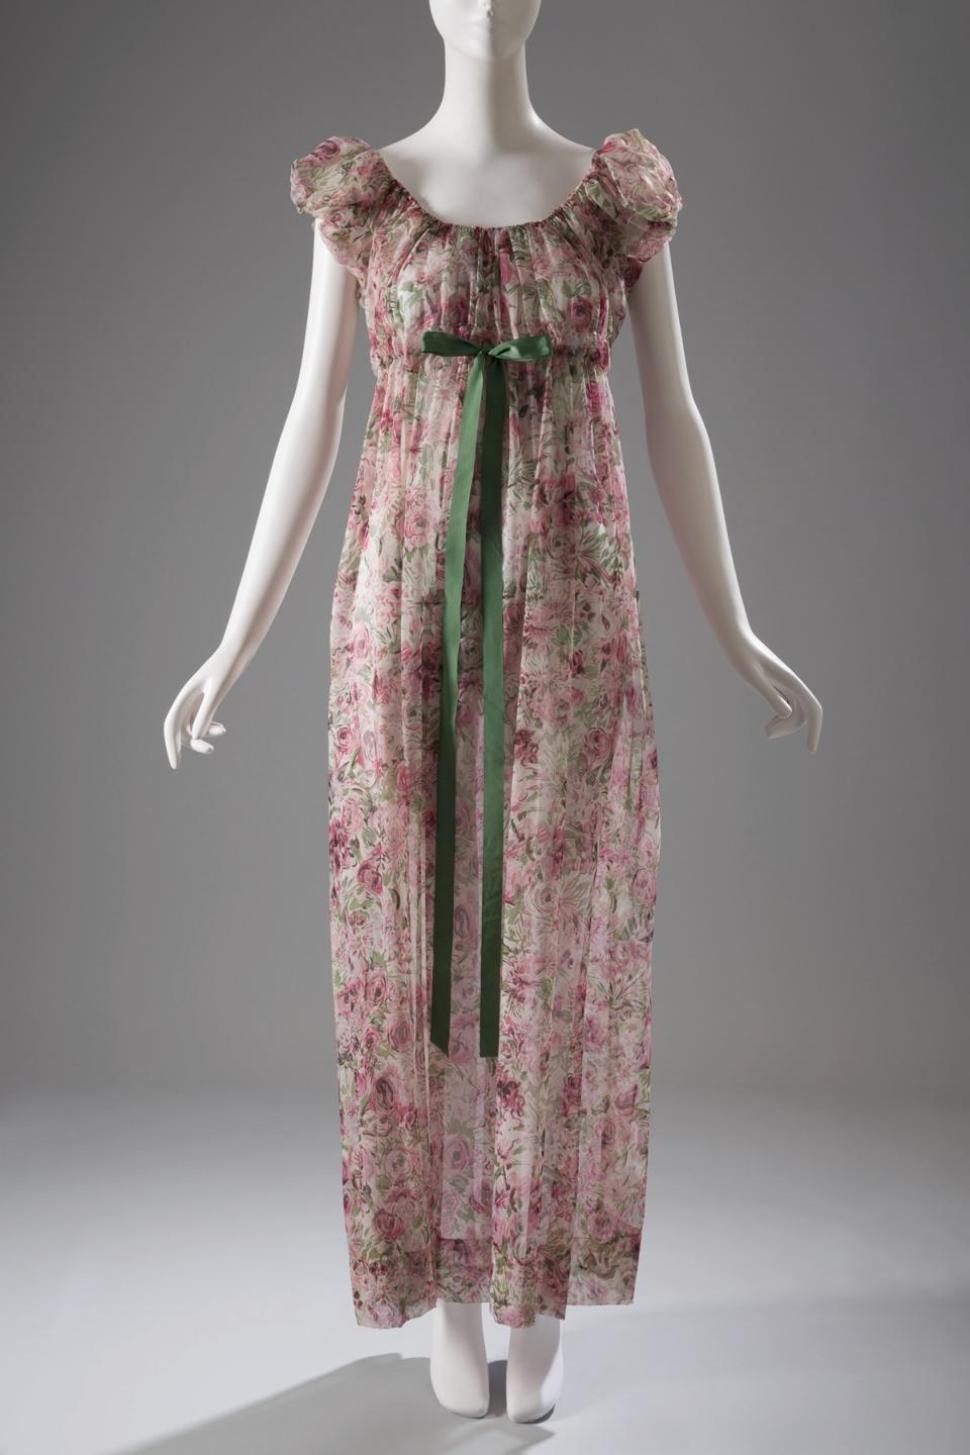 1950s, Iris, nightgown in printed nylon. U.S.